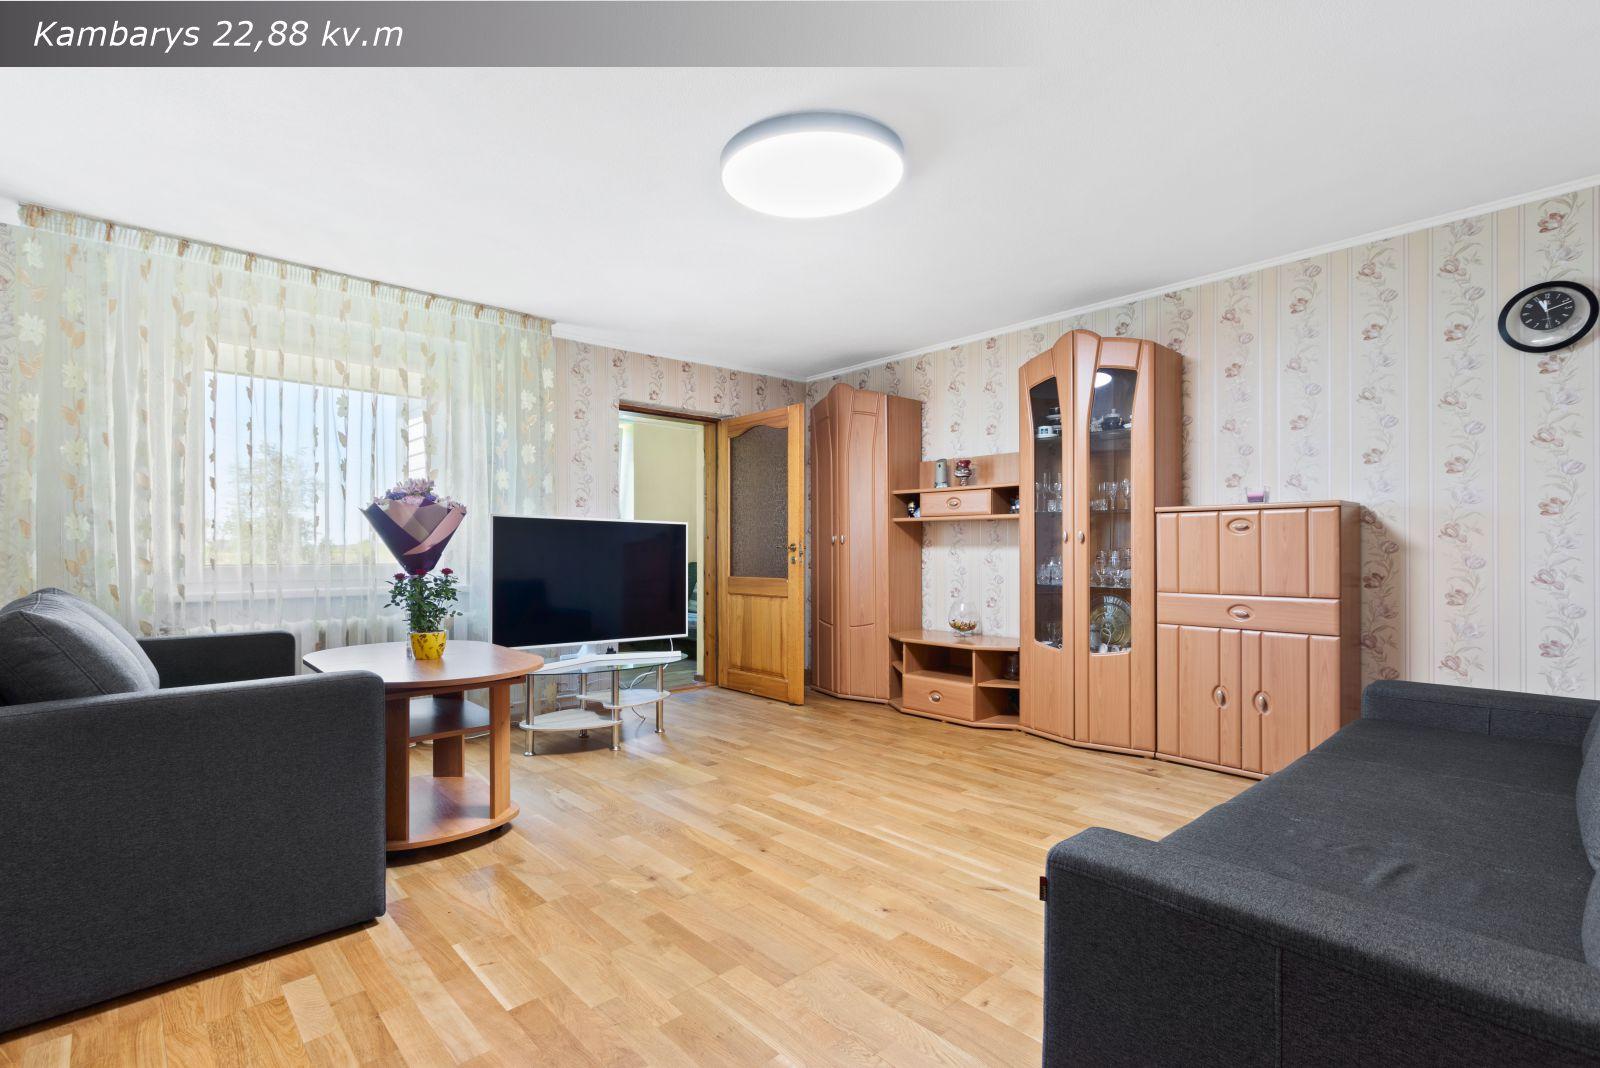 Parduodamas šviesus, erdvus ir tvarkingas 4 kambarių butas Tuopų g. 2, Tauralaukyje, Klaipėdoje